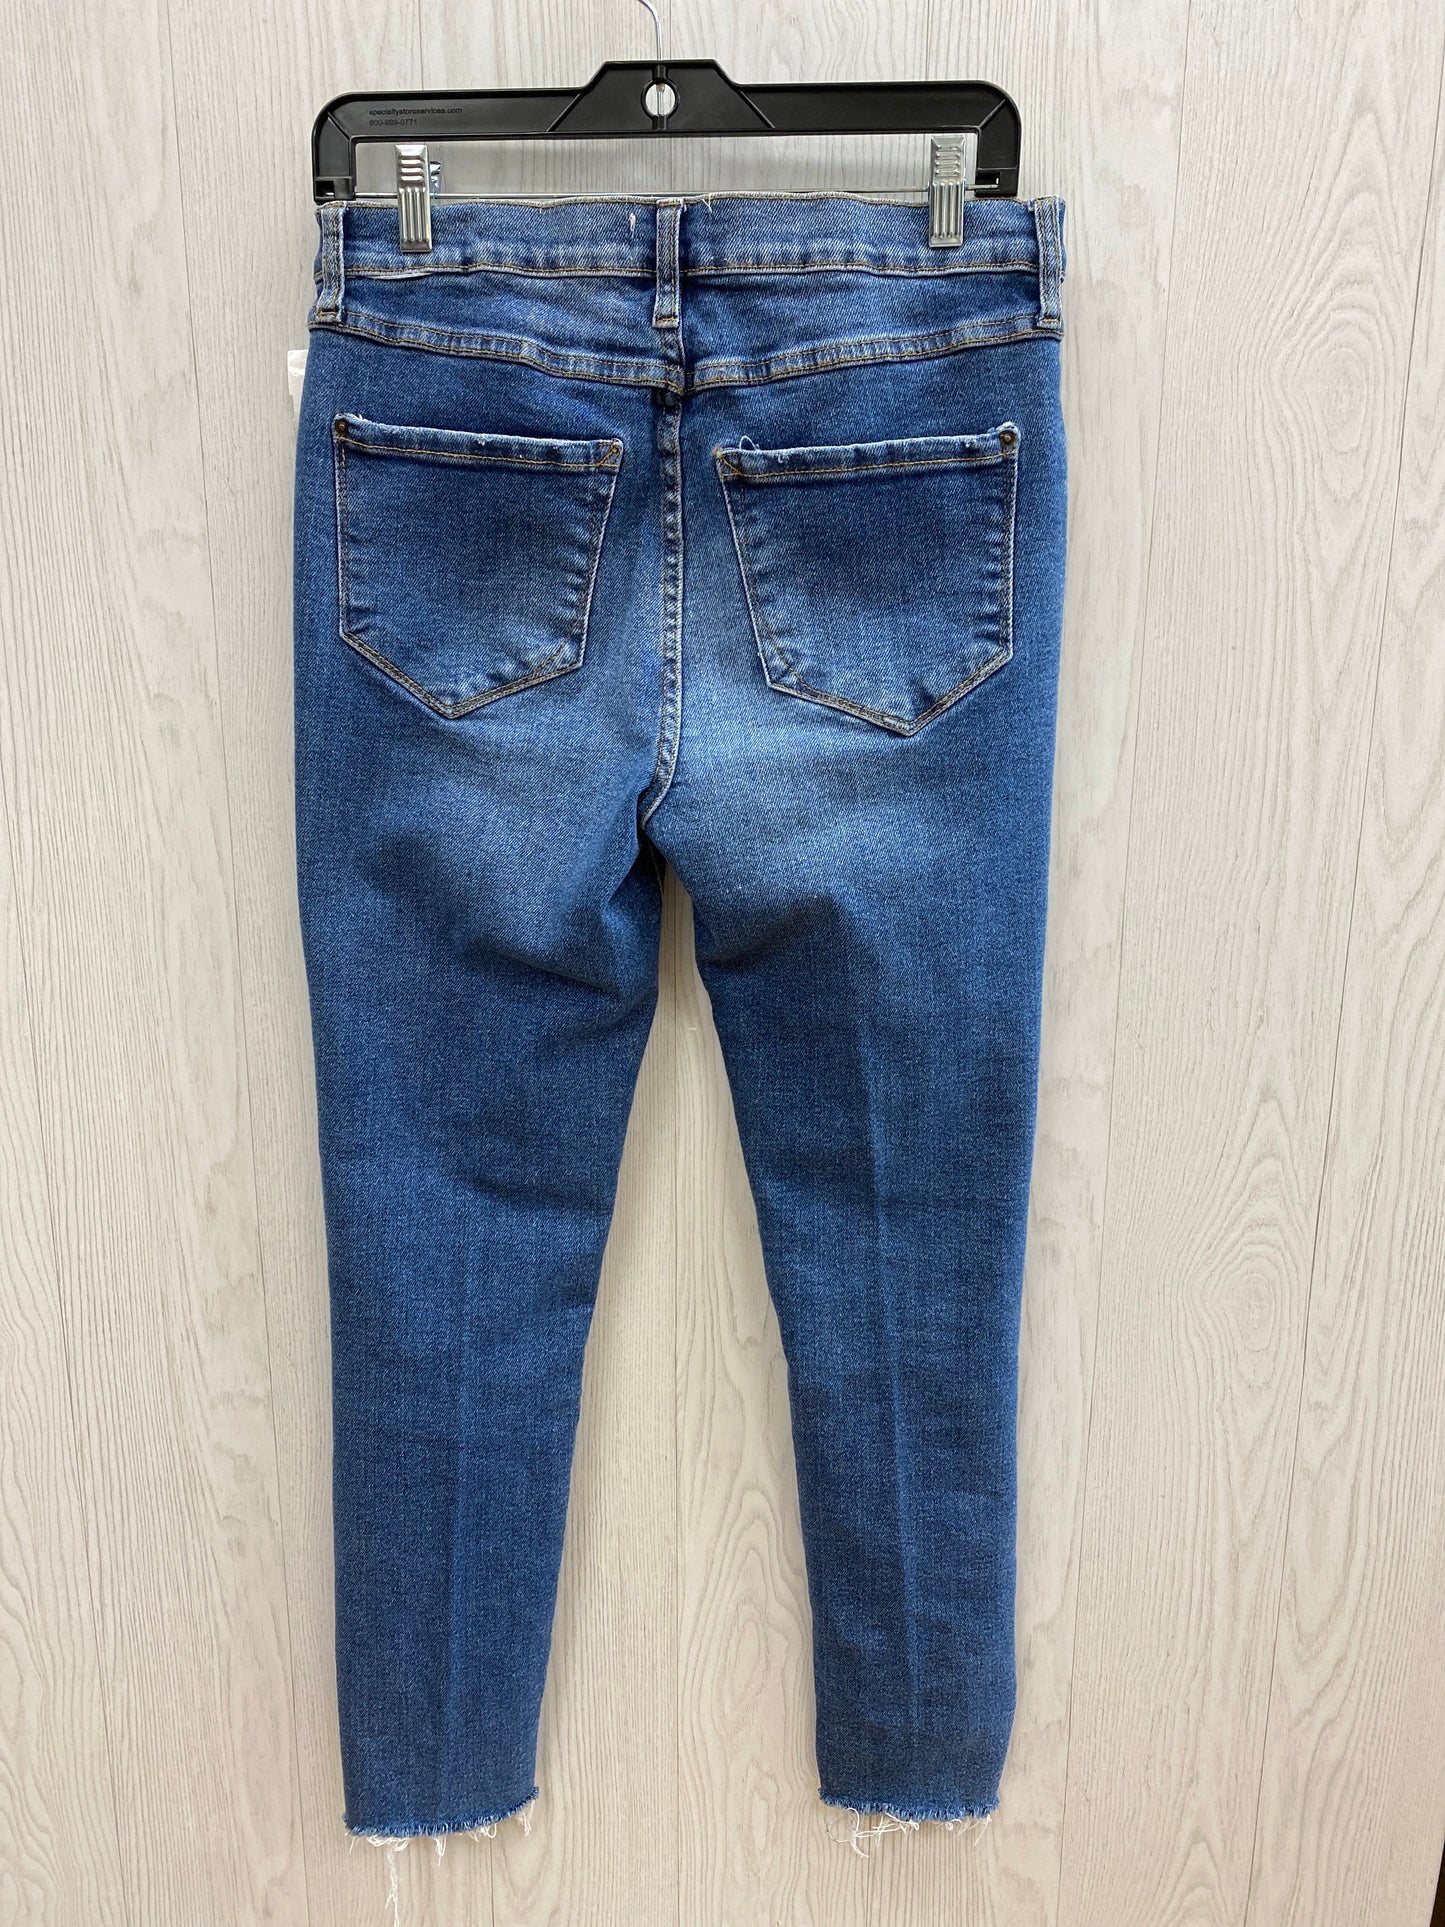 Jeans Skinny By Kensie  Size: 6